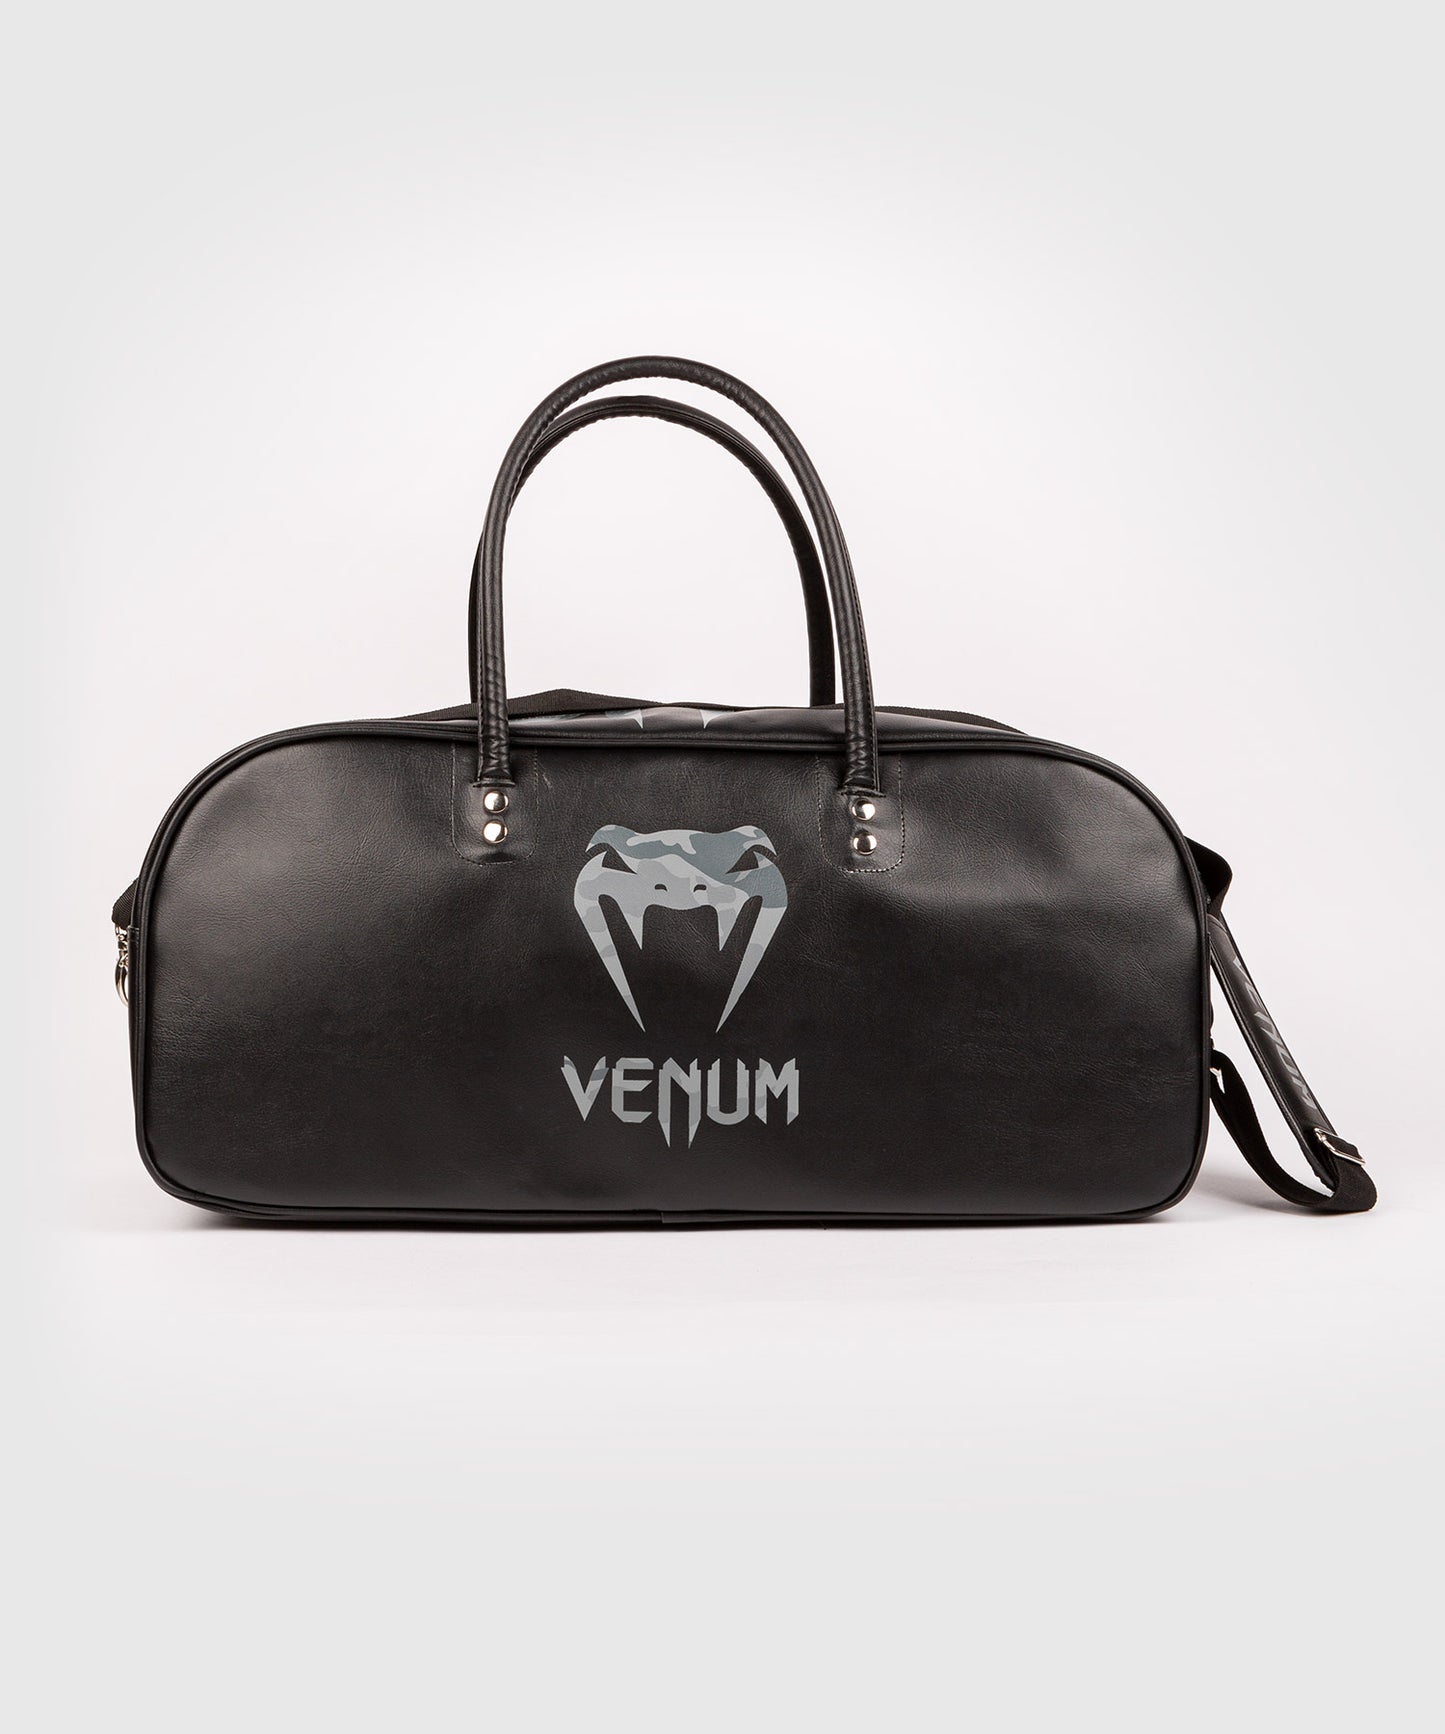 Venum Origins Tasche - Schwarz/Urban Camo - Großes Modell